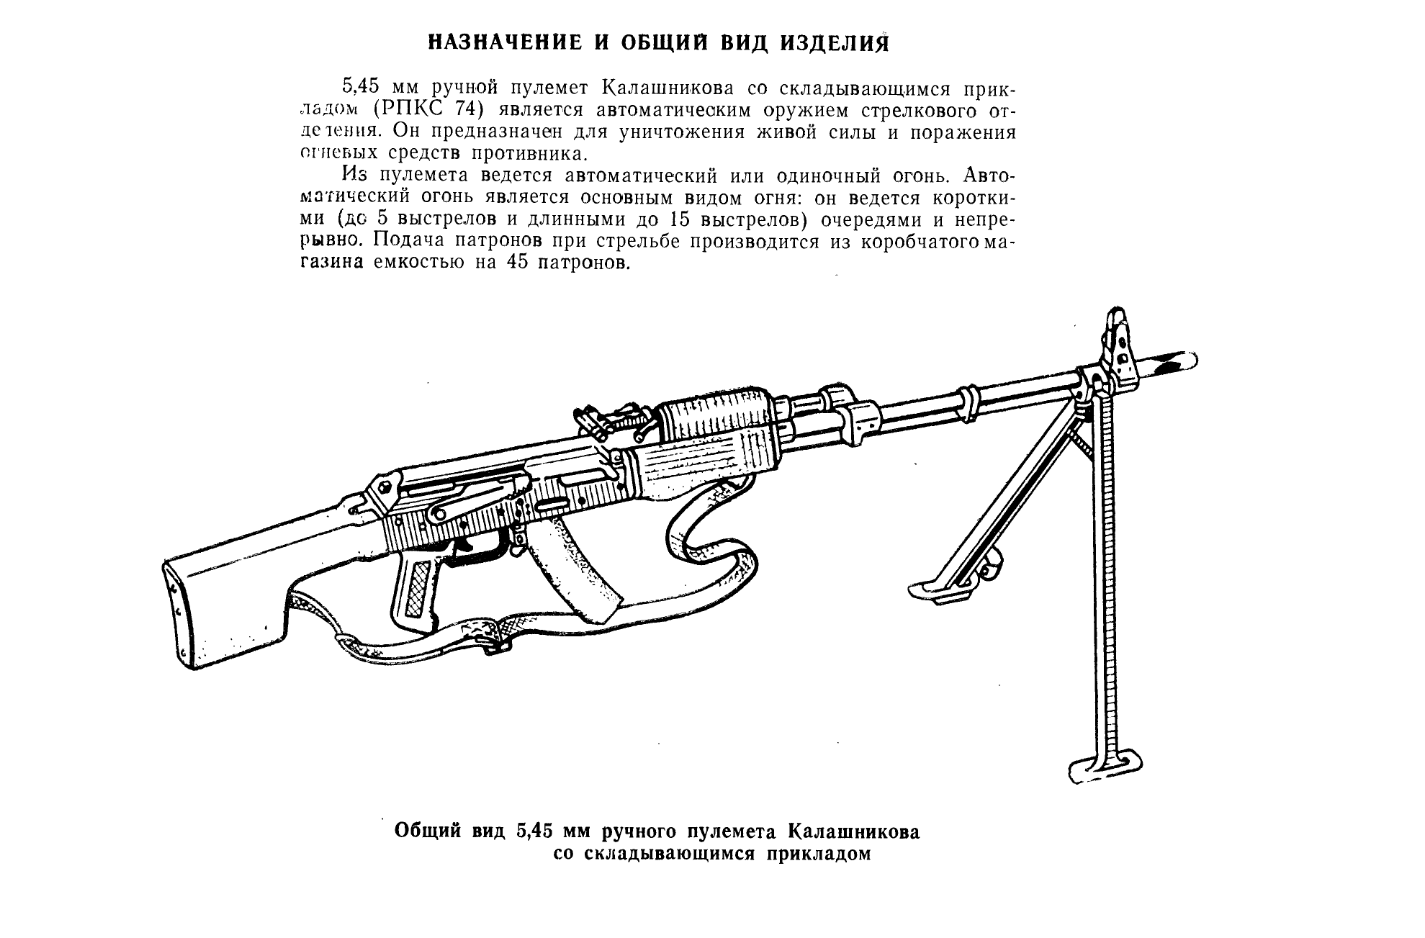 5,45-мм ручной пулемет Калашникова (РПКС74). Каталог деталей и сборочных единиц